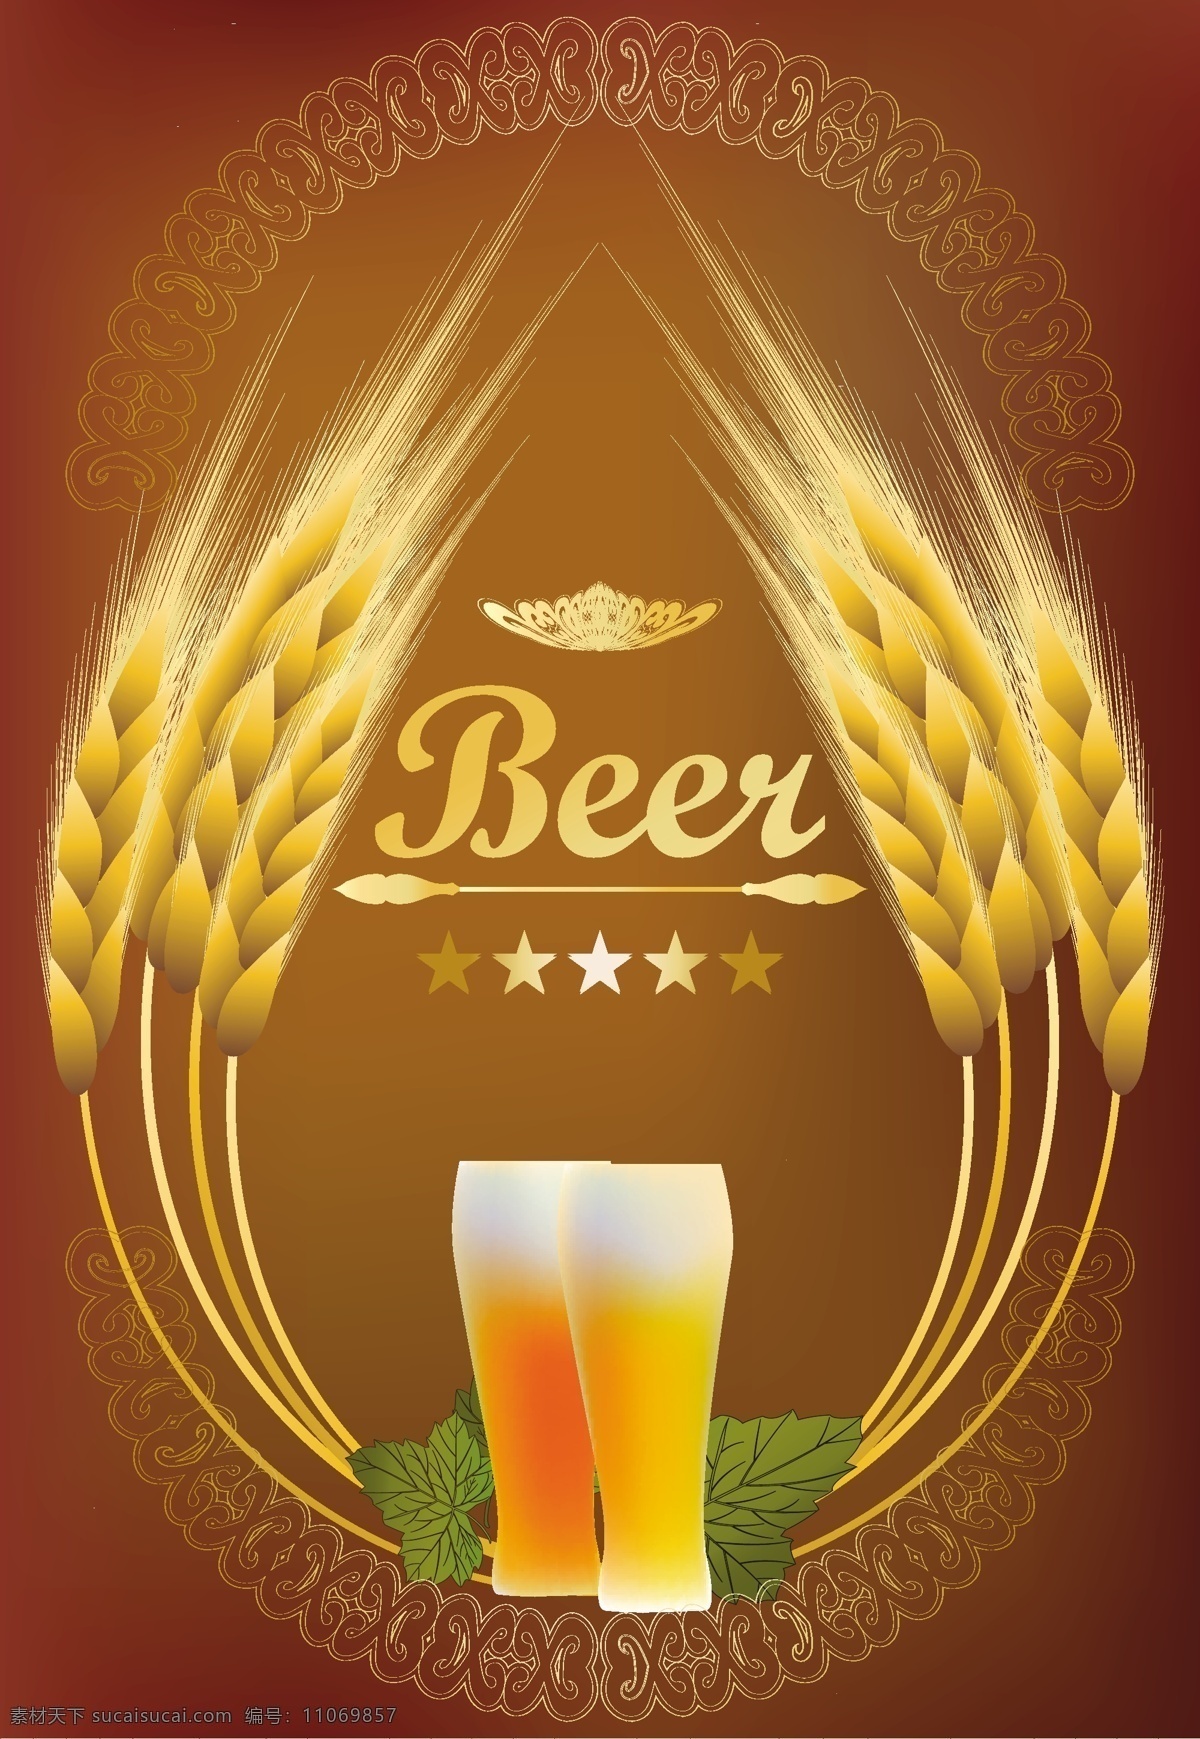 啤酒 商标 图标 啤酒商标 啤酒标签 啤酒标志 啤酒设计 酒水 beer 啤酒包装 小图标 小标志 logo 标志 vi icon 标识 图标设计 logo设计 标志设计 标识设计 矢量设计 餐饮美食 生活百科 矢量